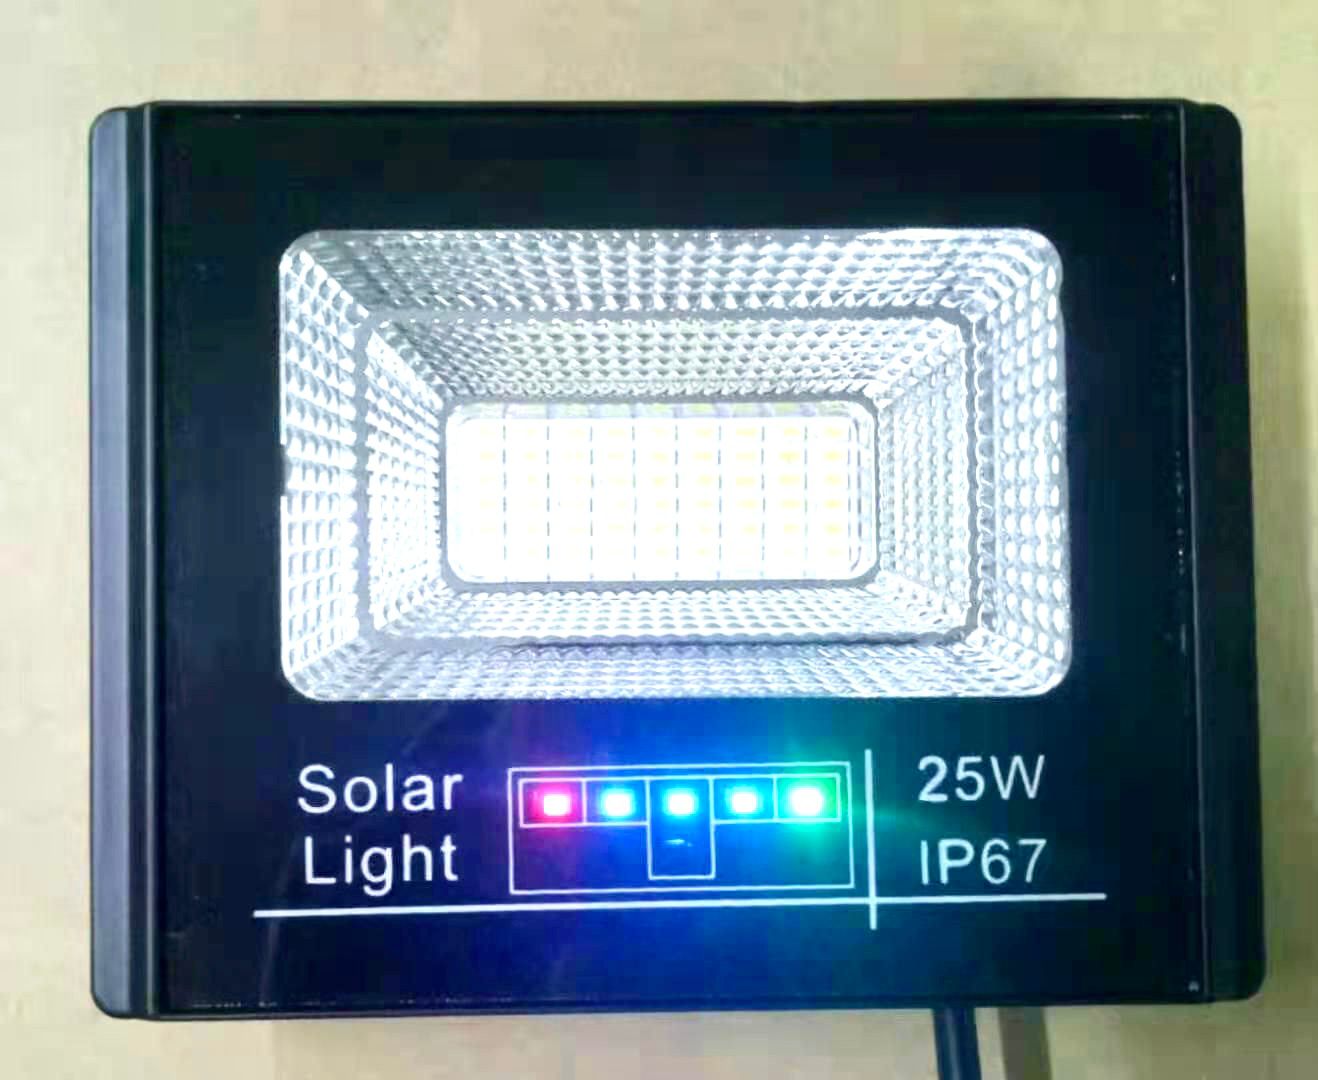 SG-25B Solar Spot Light